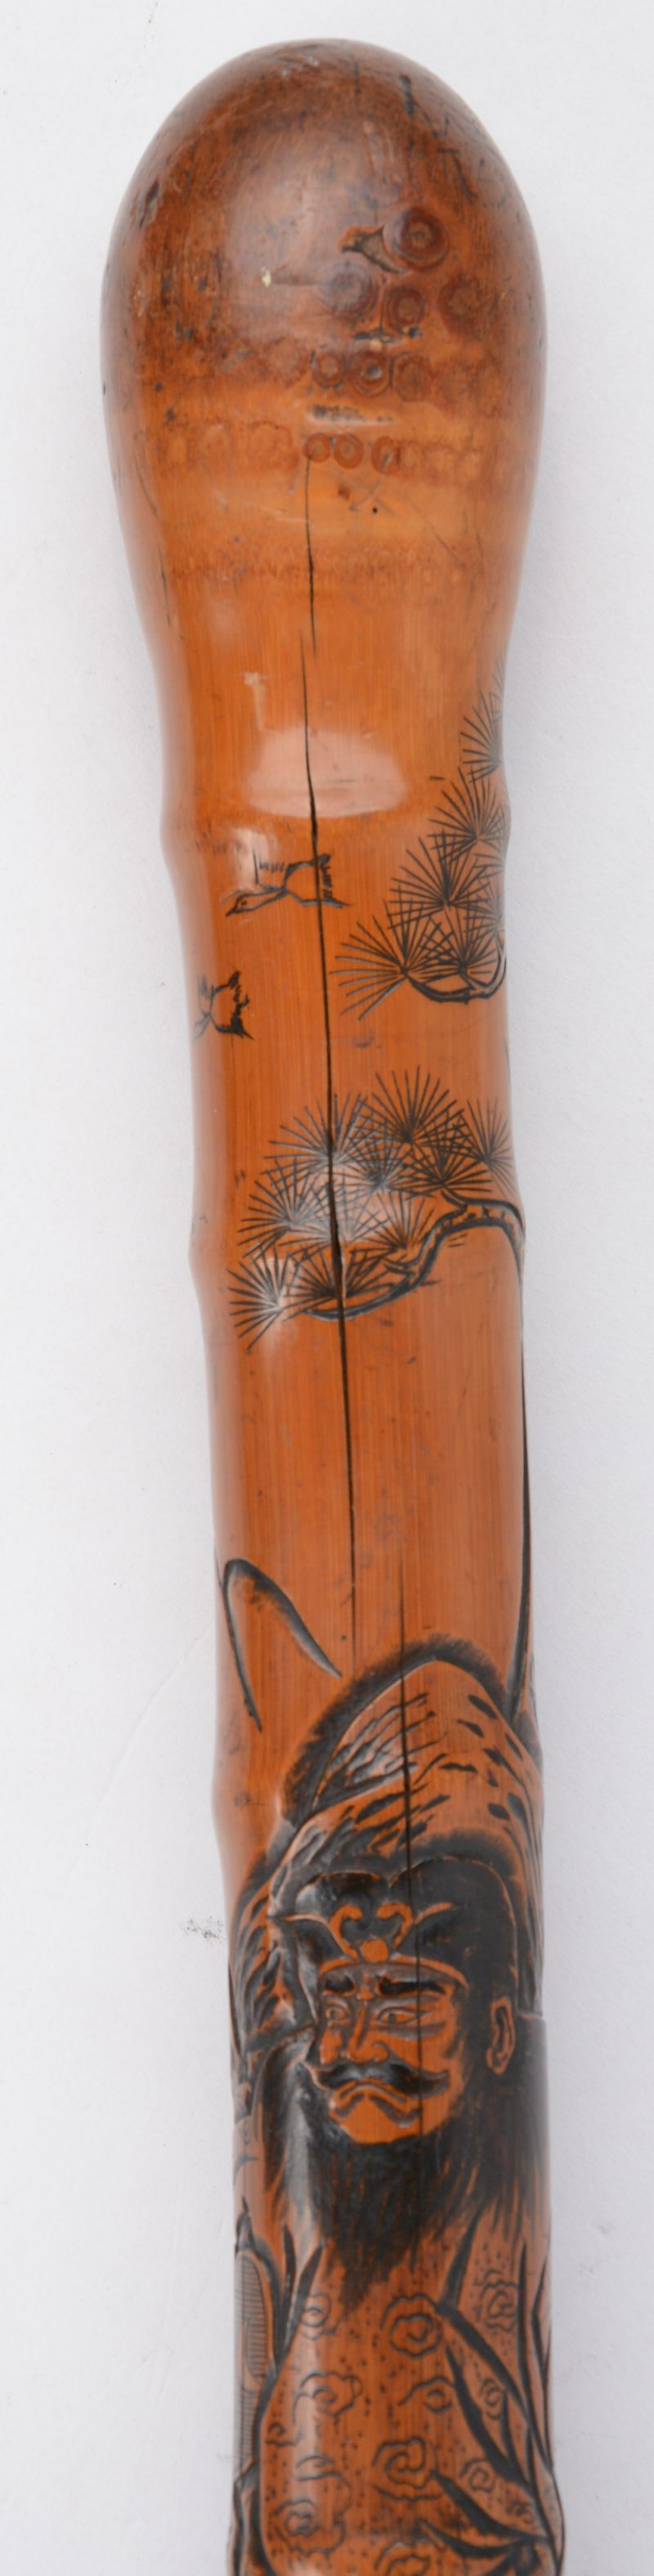 Een wandelstok van bamboe met een uitgestoken decor van krijgers. Onderaan een uitneembare degen met ivoren handvat.